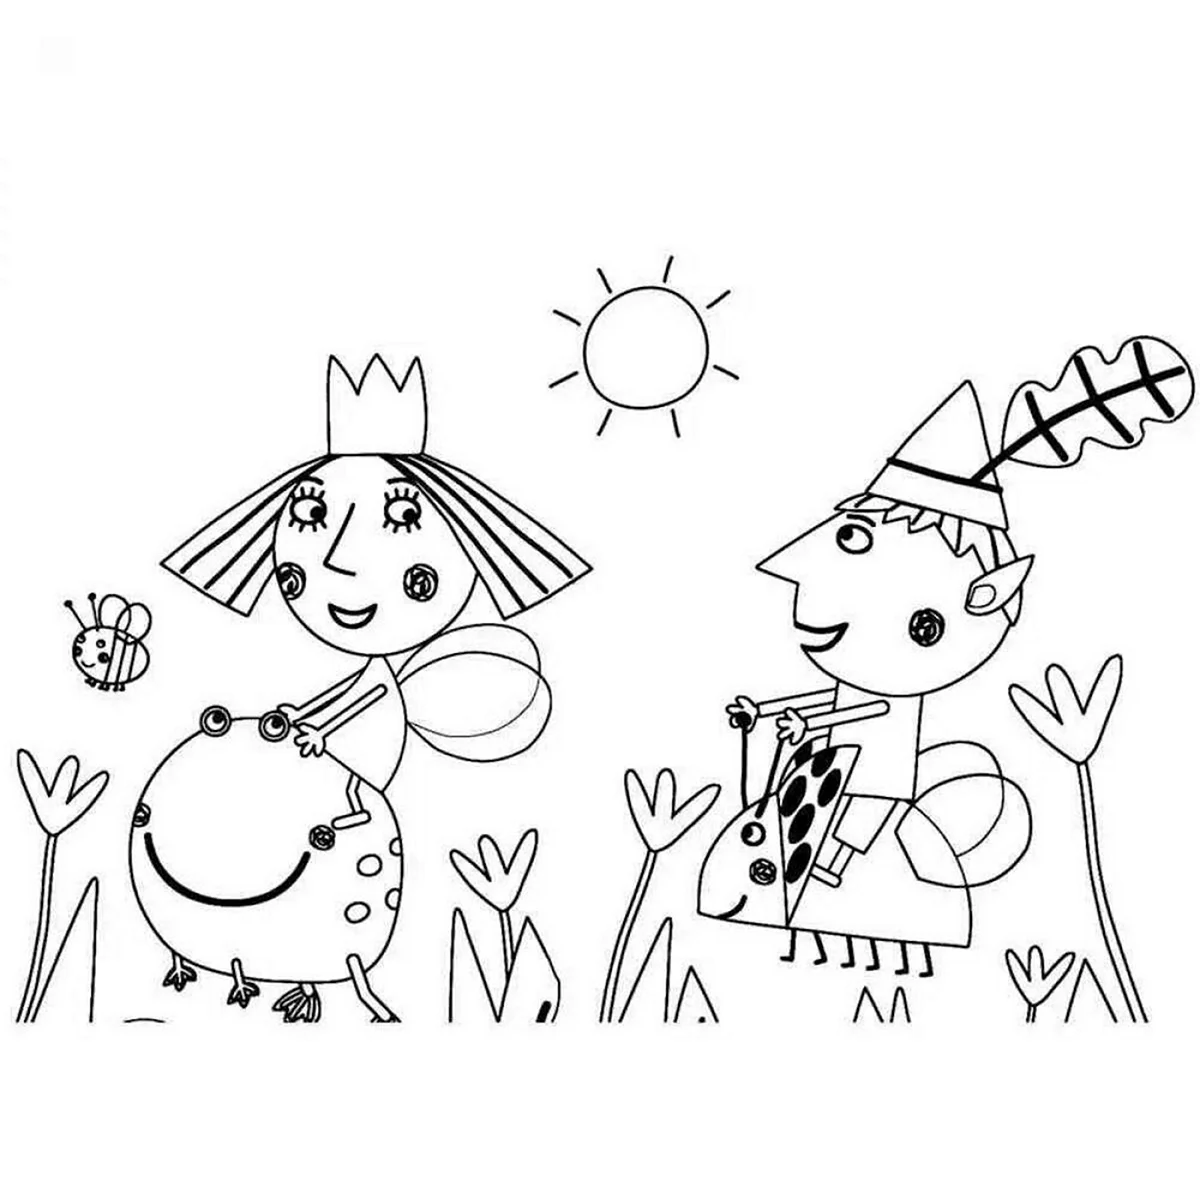 Раскраска Новогодняя Бен и Холли для детей. Картинка из мультфильма